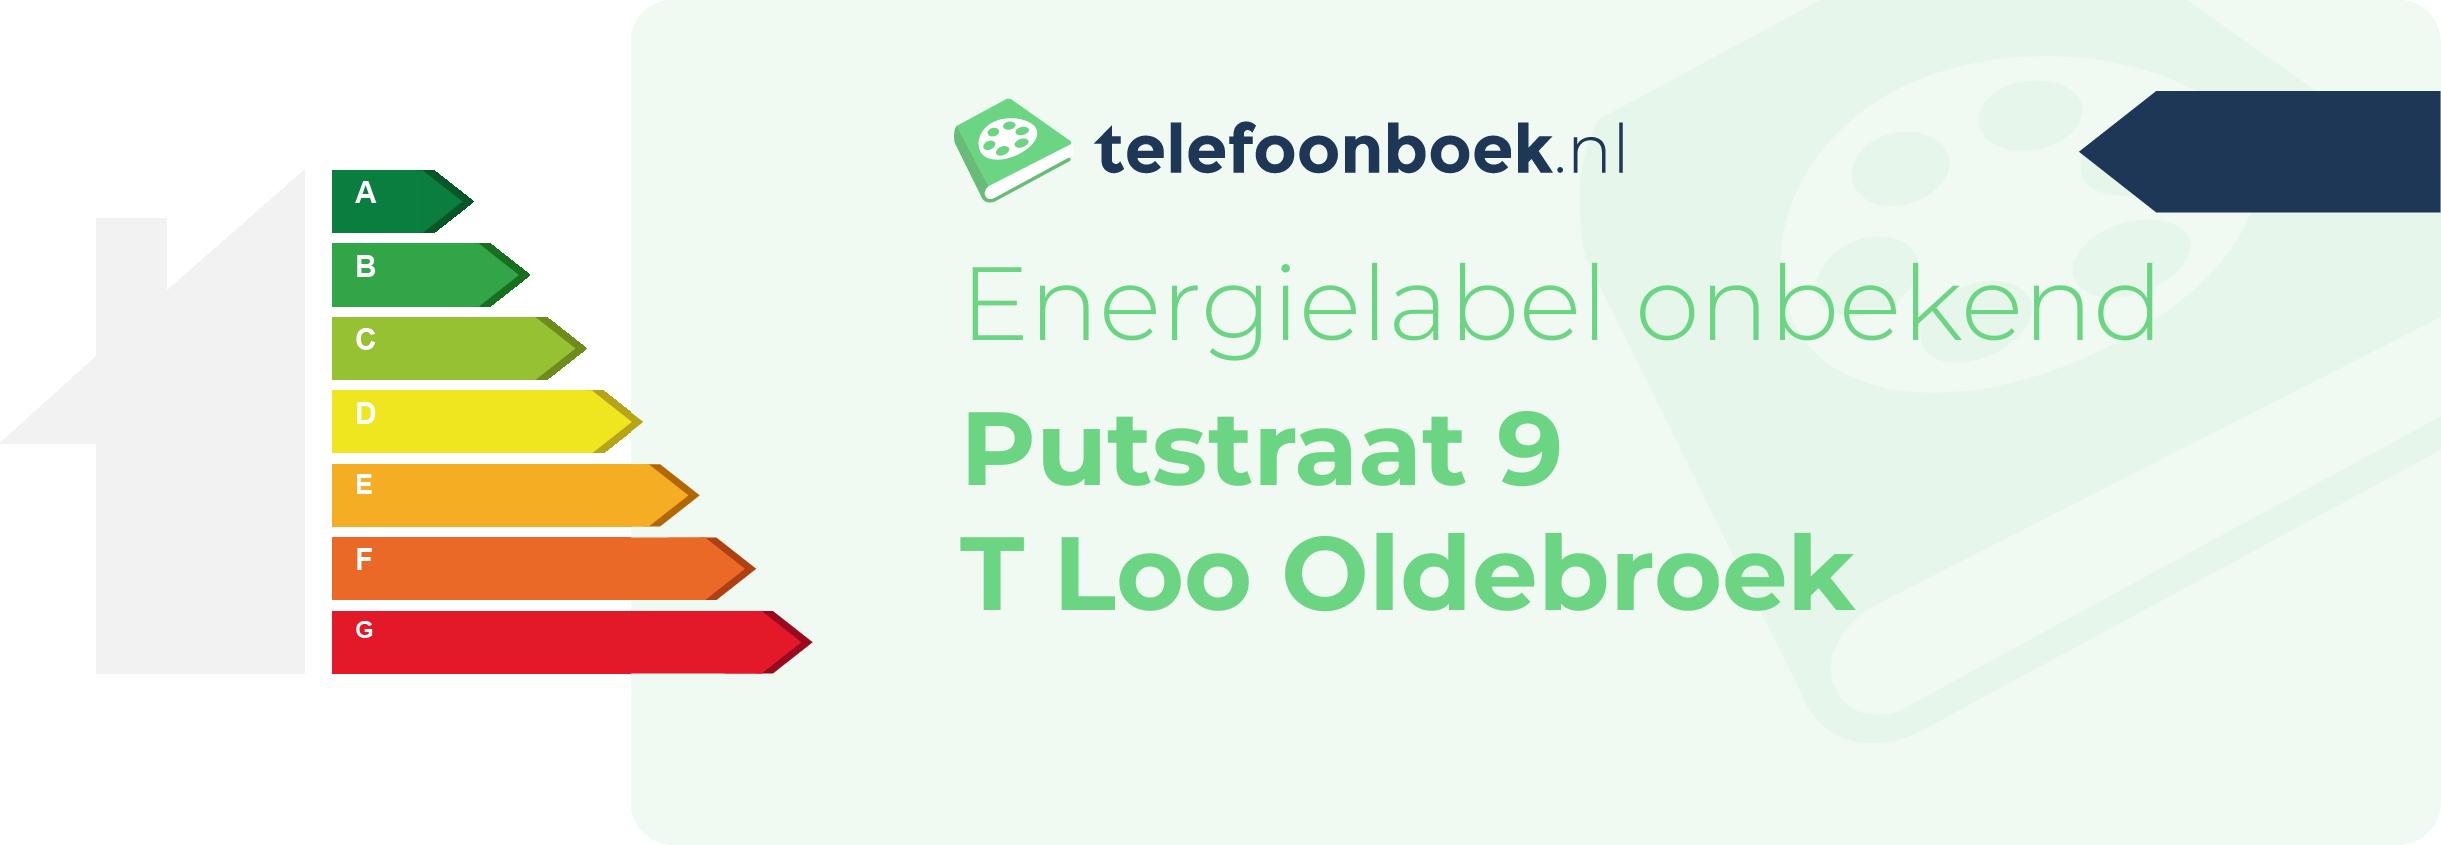 Energielabel Putstraat 9 T Loo Oldebroek